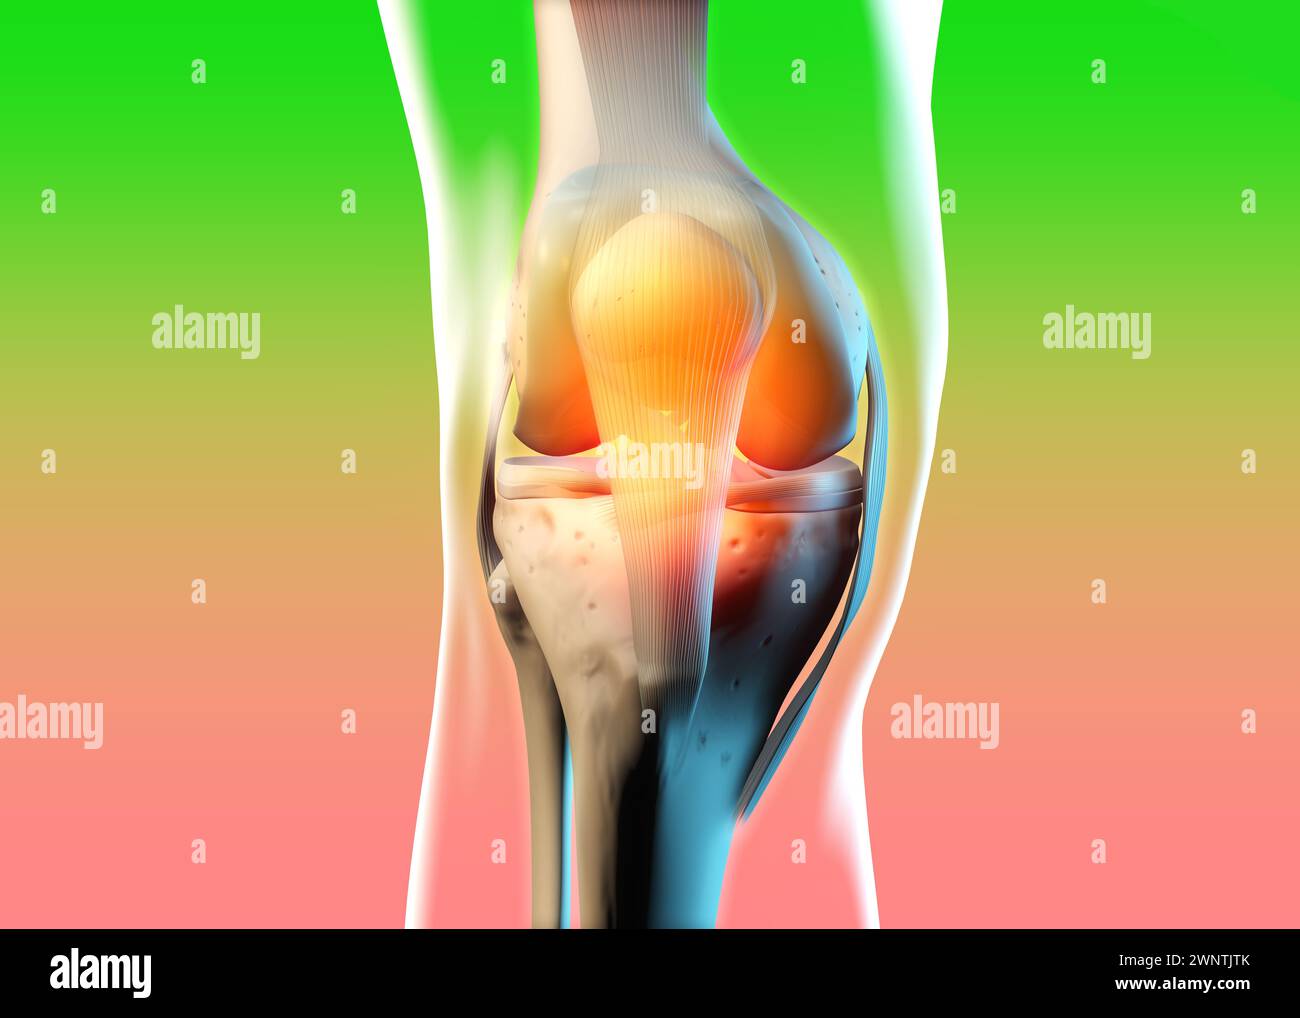 Illustrazione 3D che mostra ossa, legamenti e cartilagine di un'articolazione del ginocchio Foto Stock